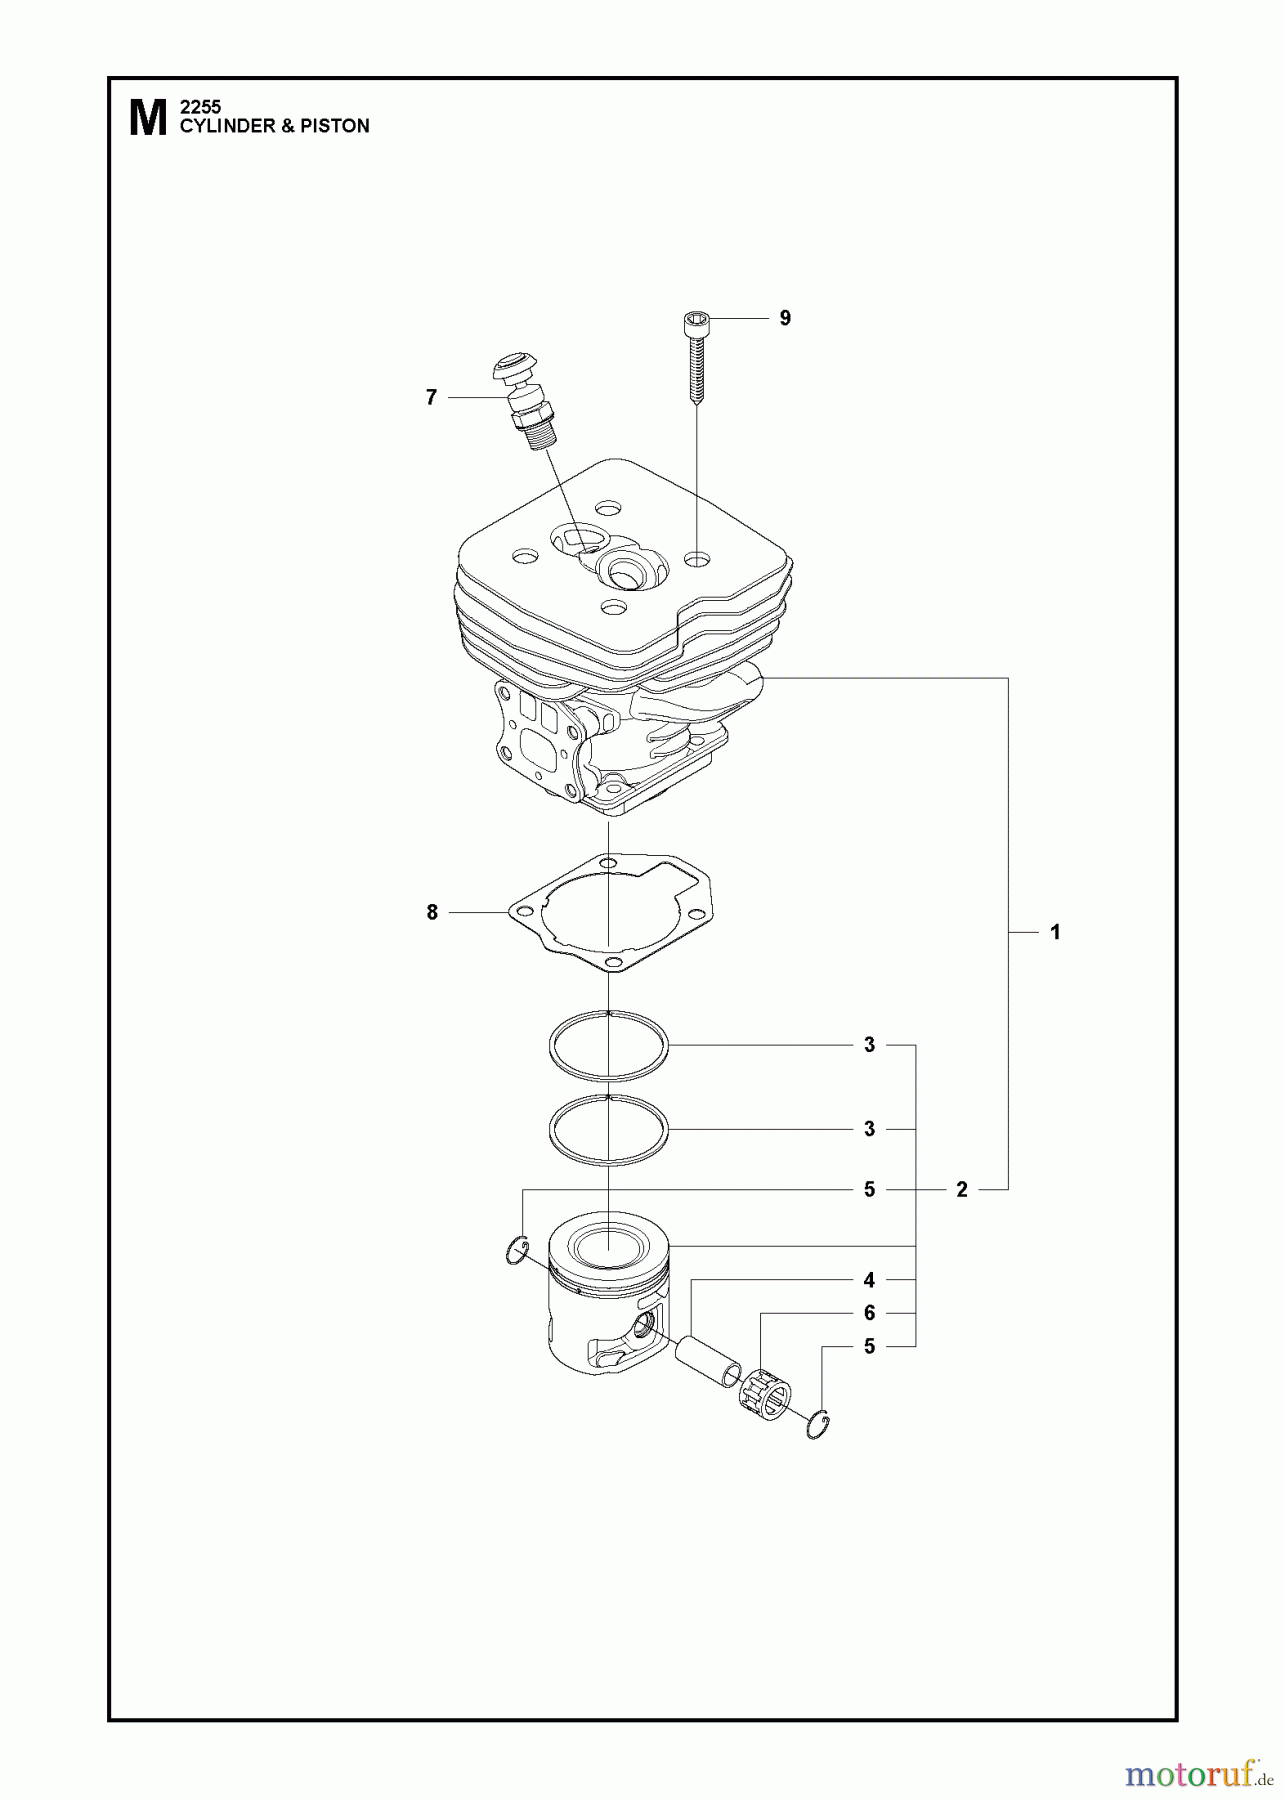  Jonsered Motorsensen, Trimmer BC2255 - Jonsered Brushcutter (2011-01) CYLINDER PISTON